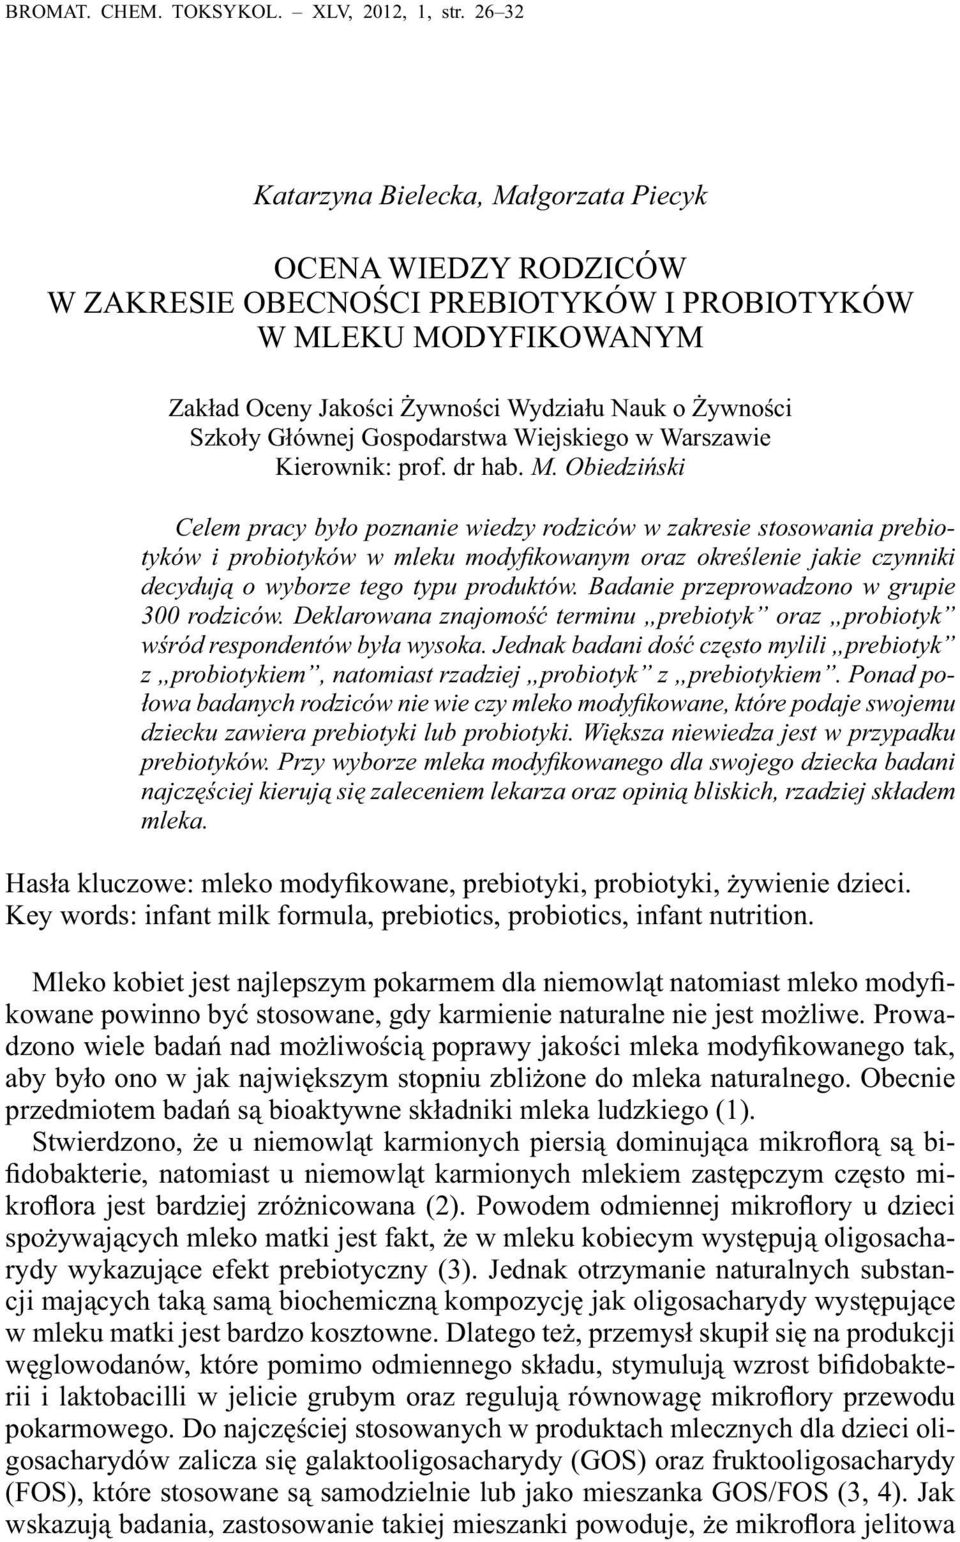 Głównej Gospodarstwa Wiejskiego w Warszawie Kierownik: prof. dr hab. M.